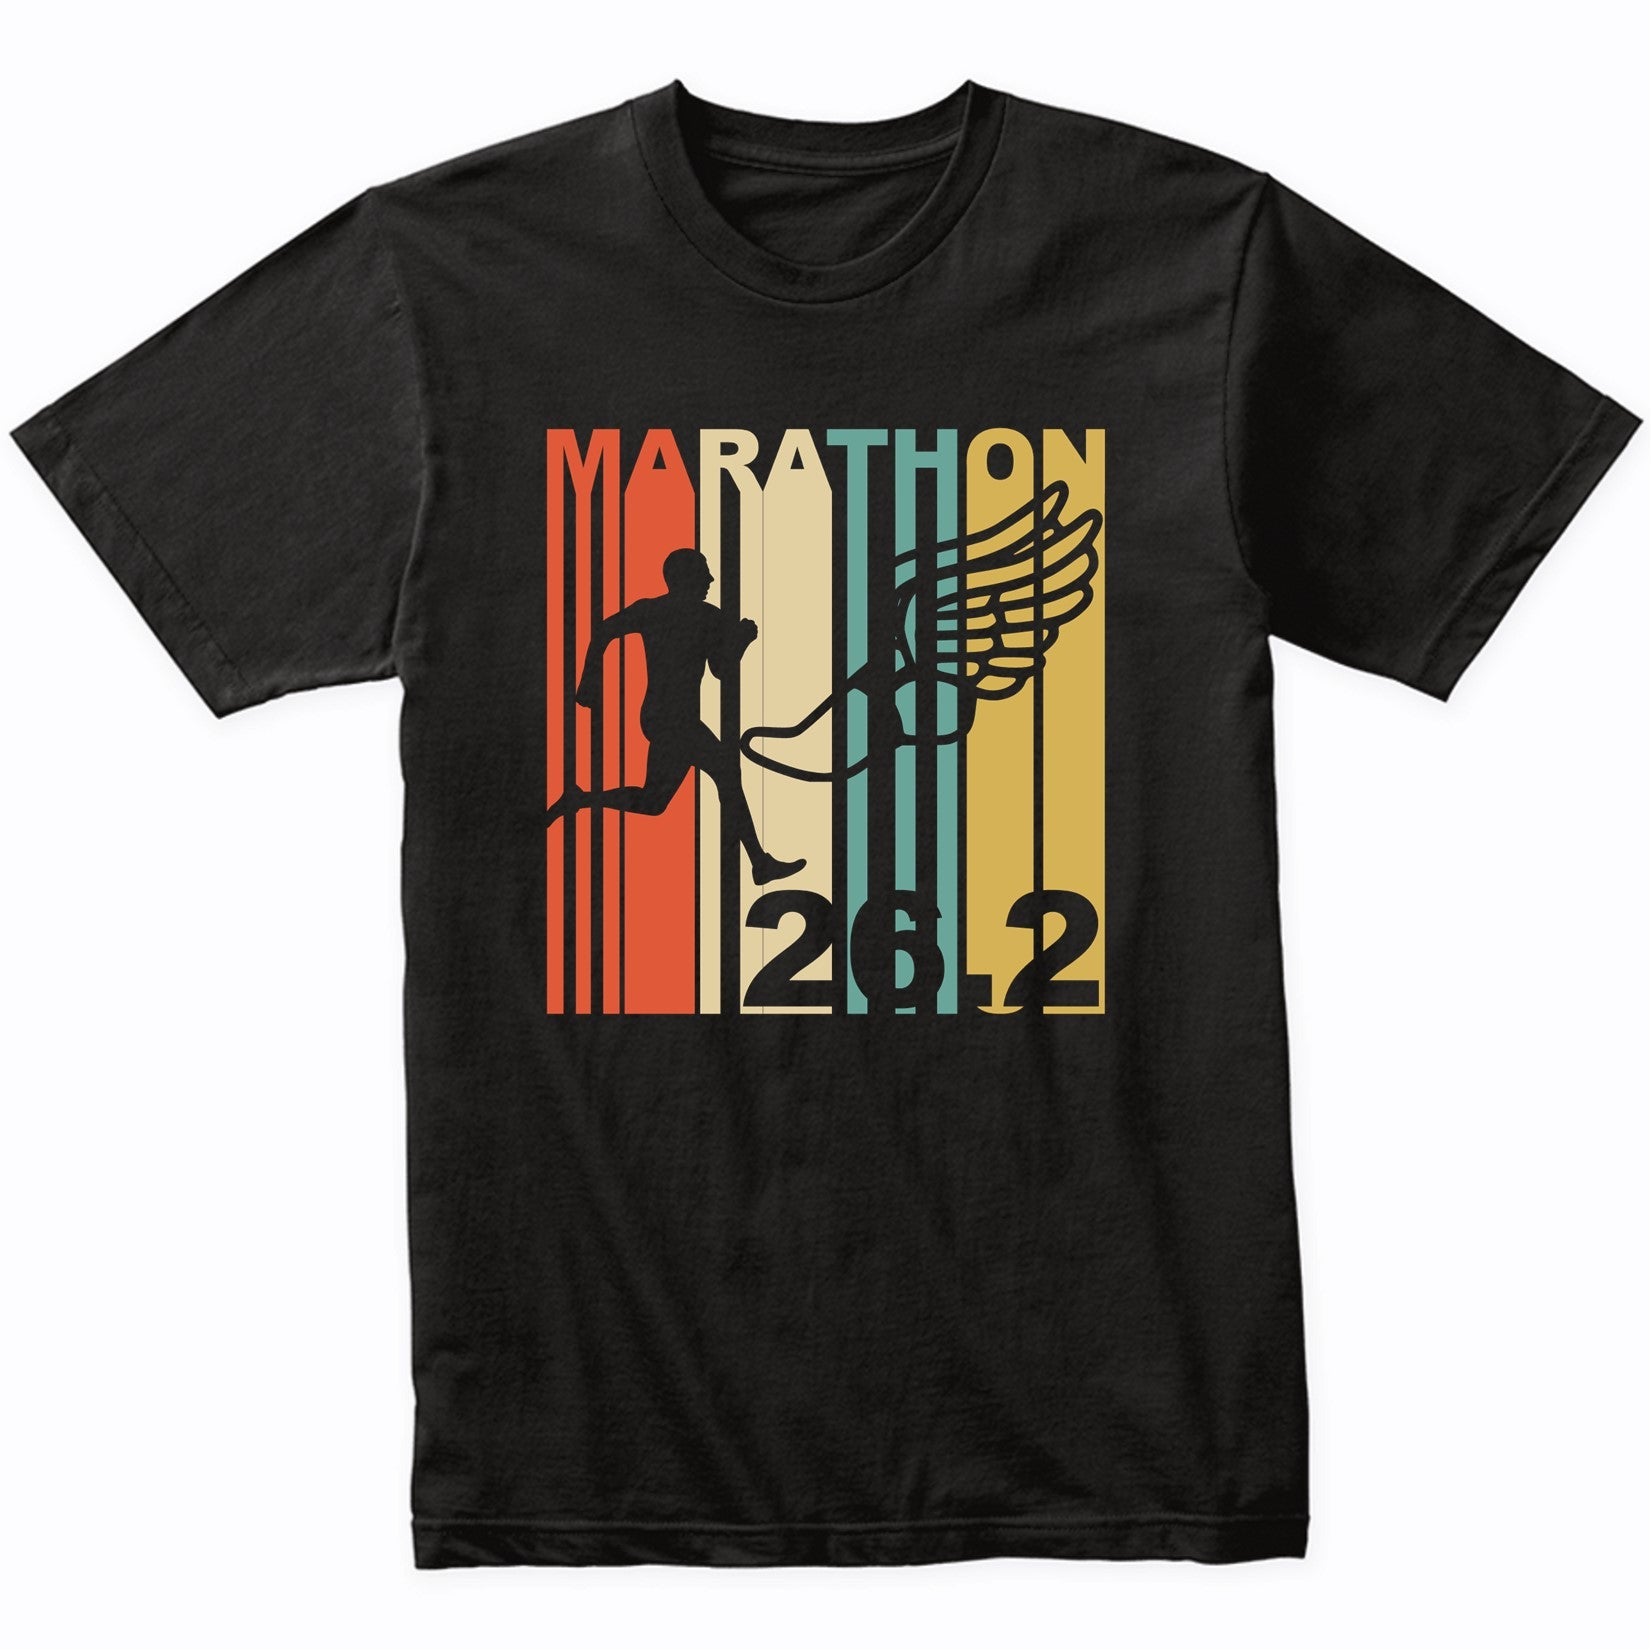 Vintage Retro 1970's Style Marathon Runner T-Shirt